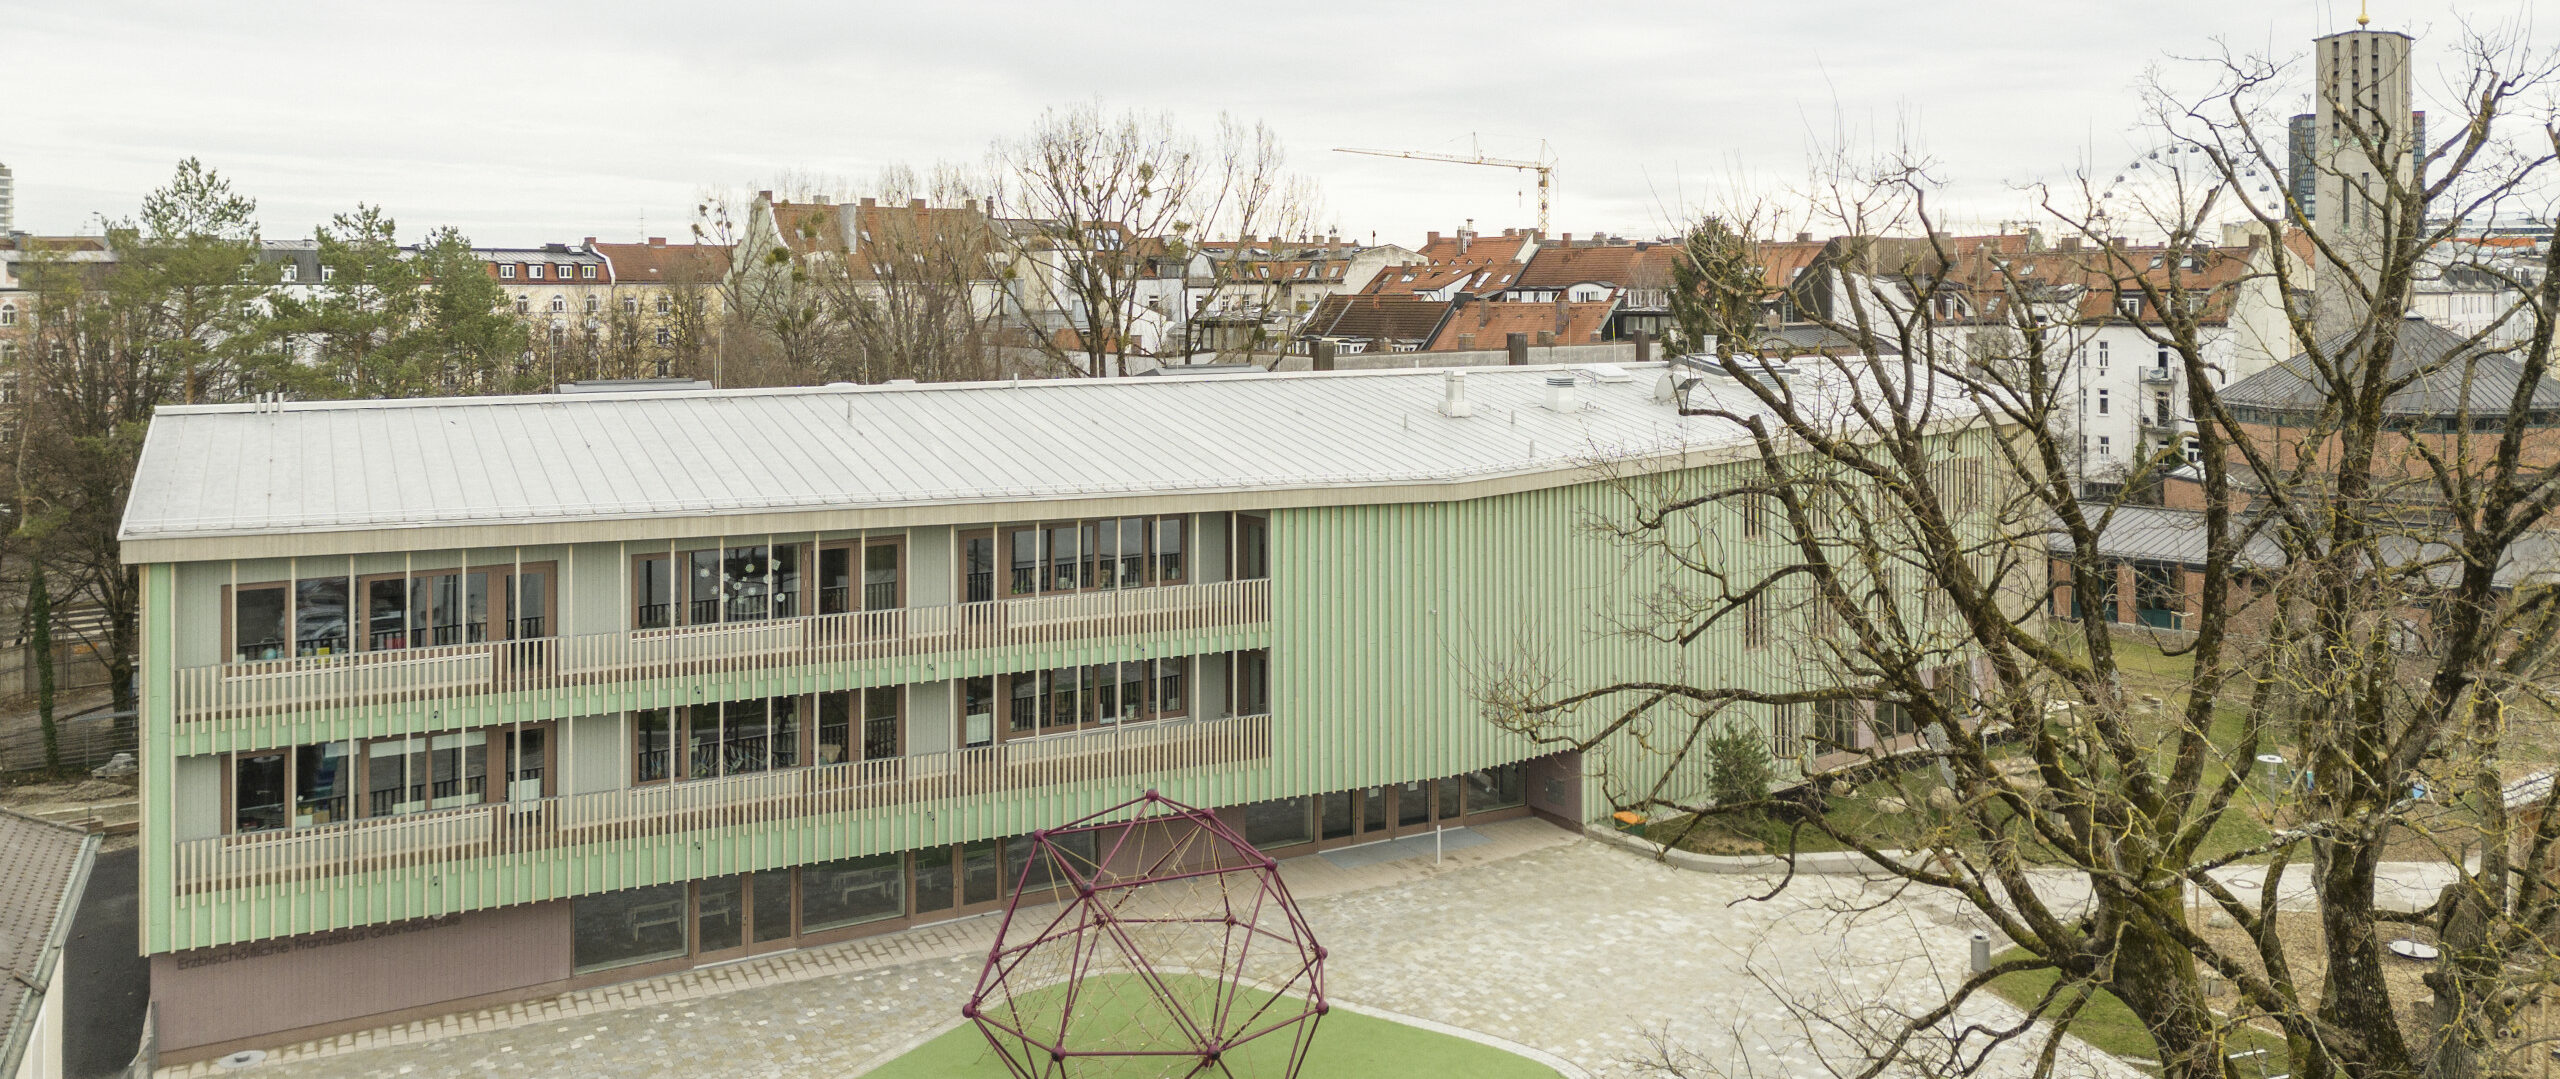 Grundschule Haidhausen von außen aus der Vogelperspektive